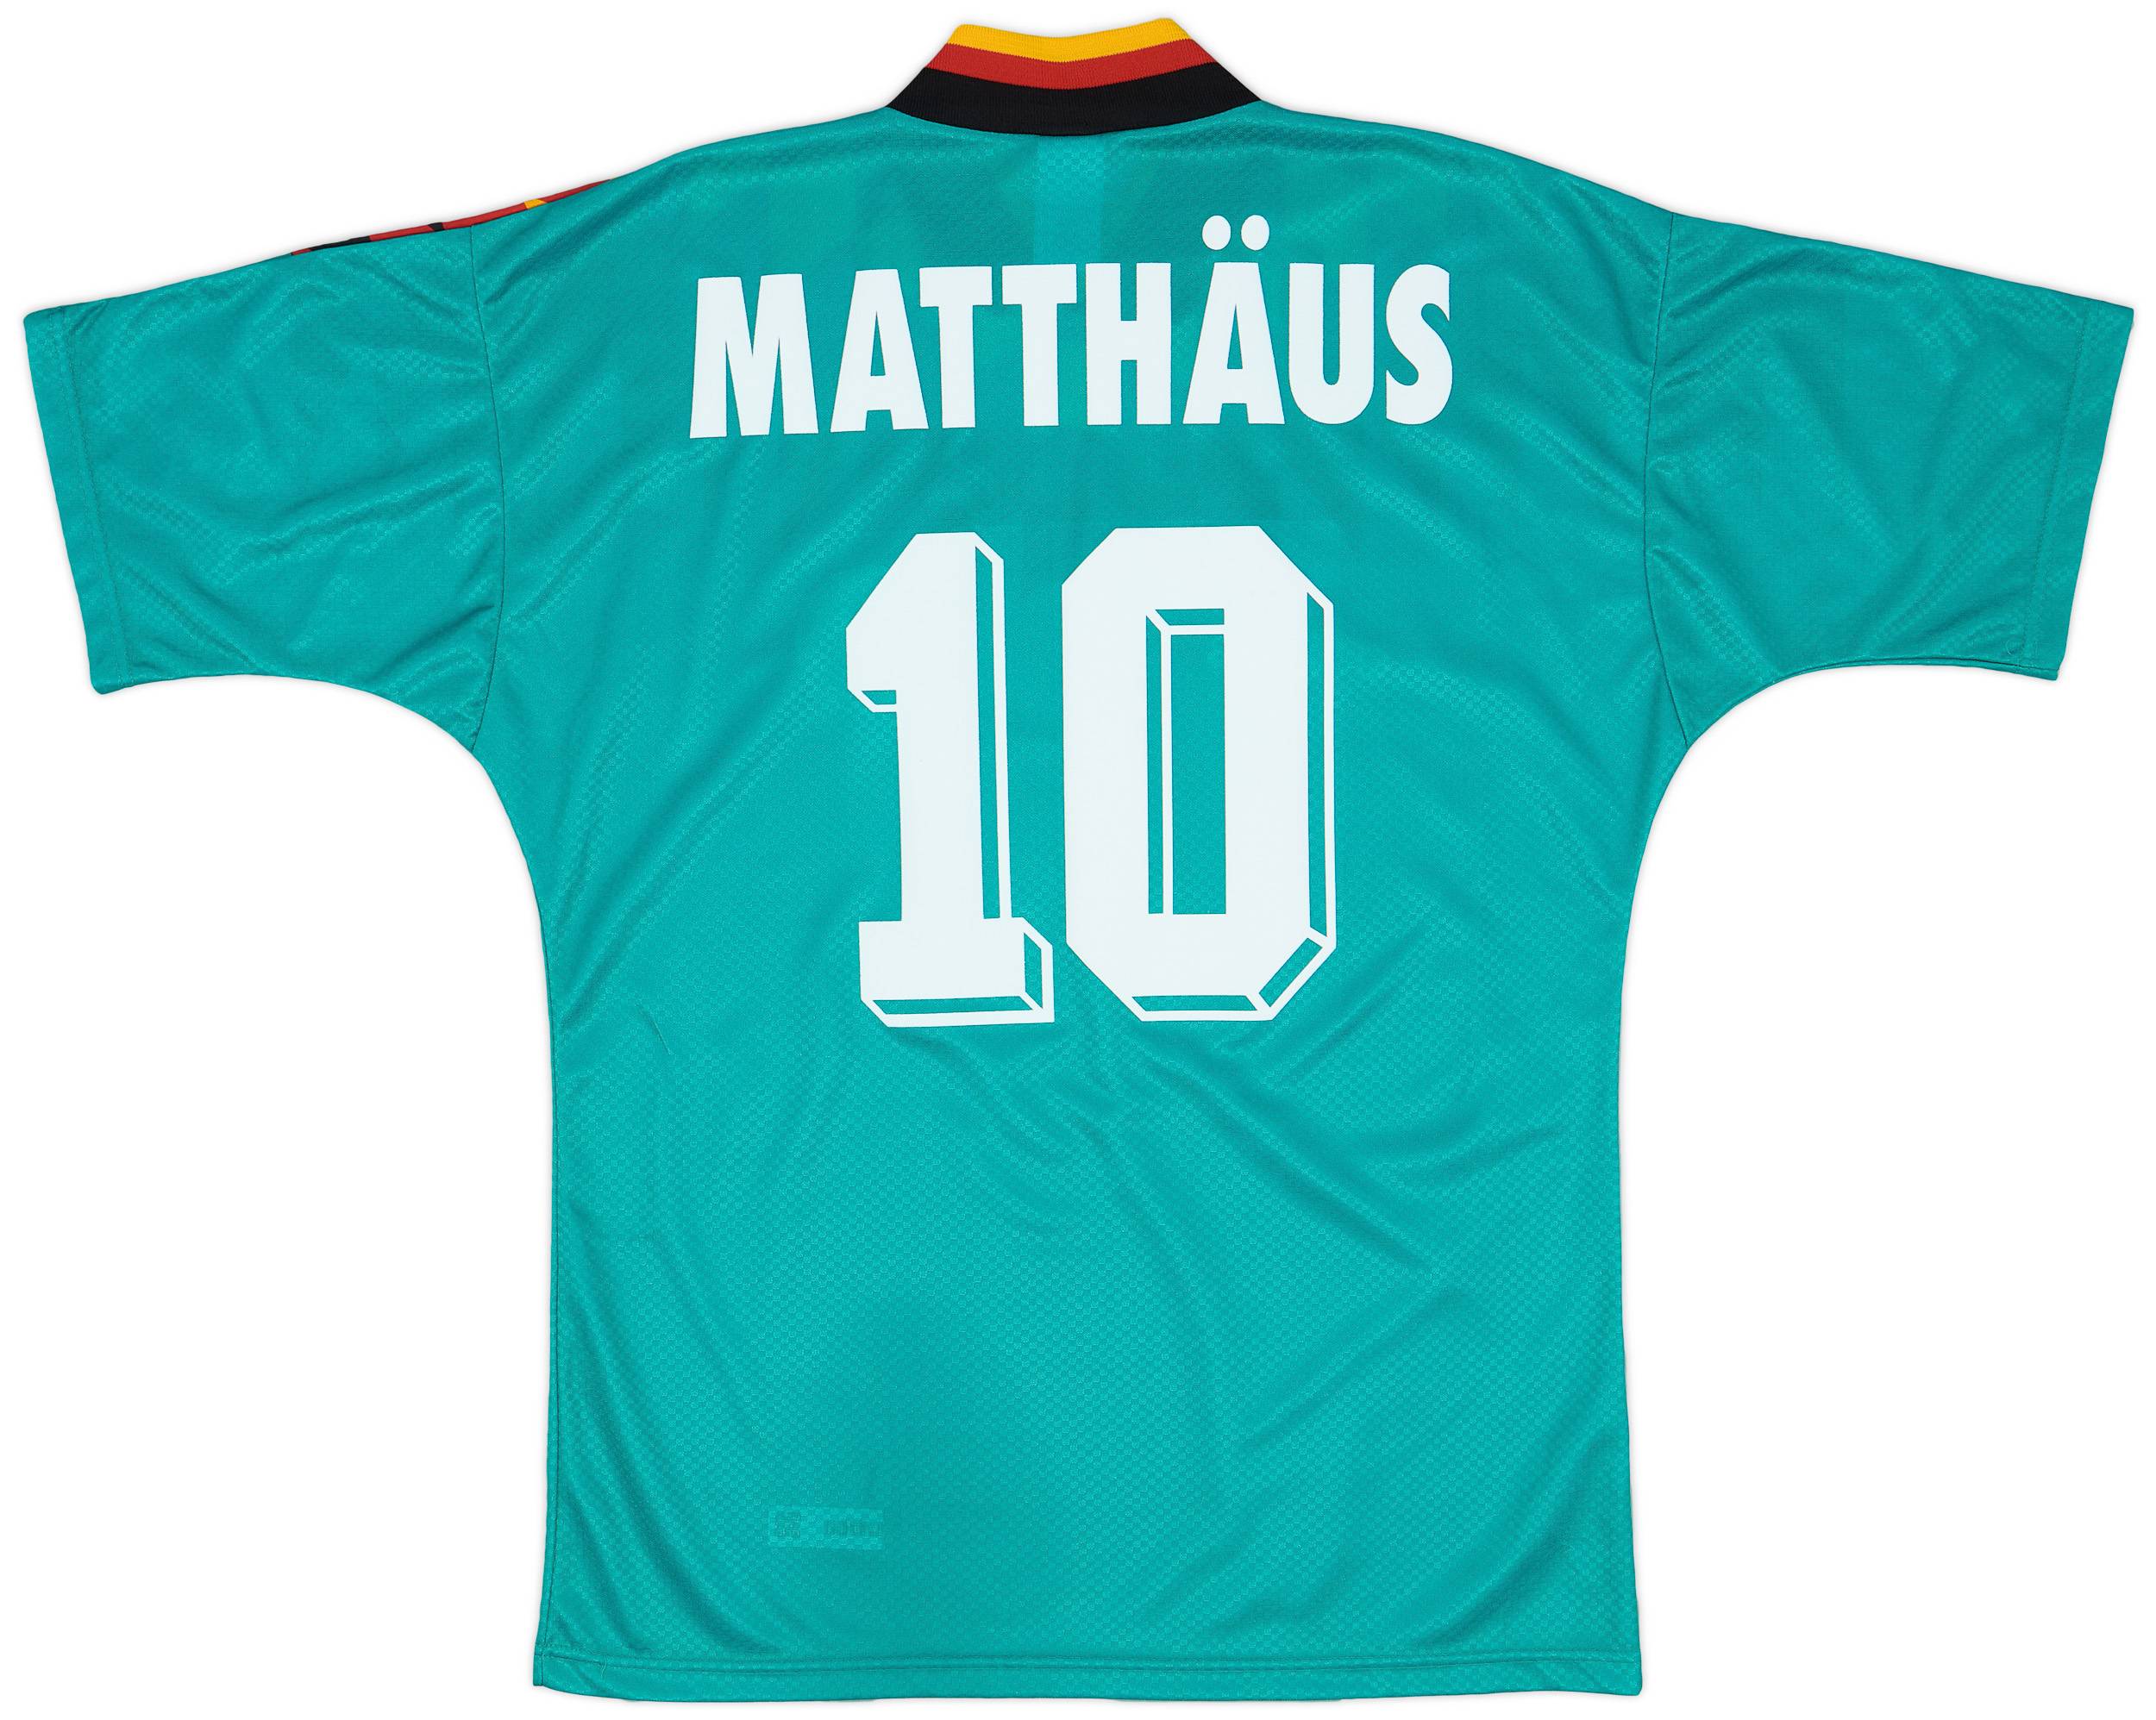 1994-96 Germany Away Shirt Matthaus #10 - 9/10 - (M)